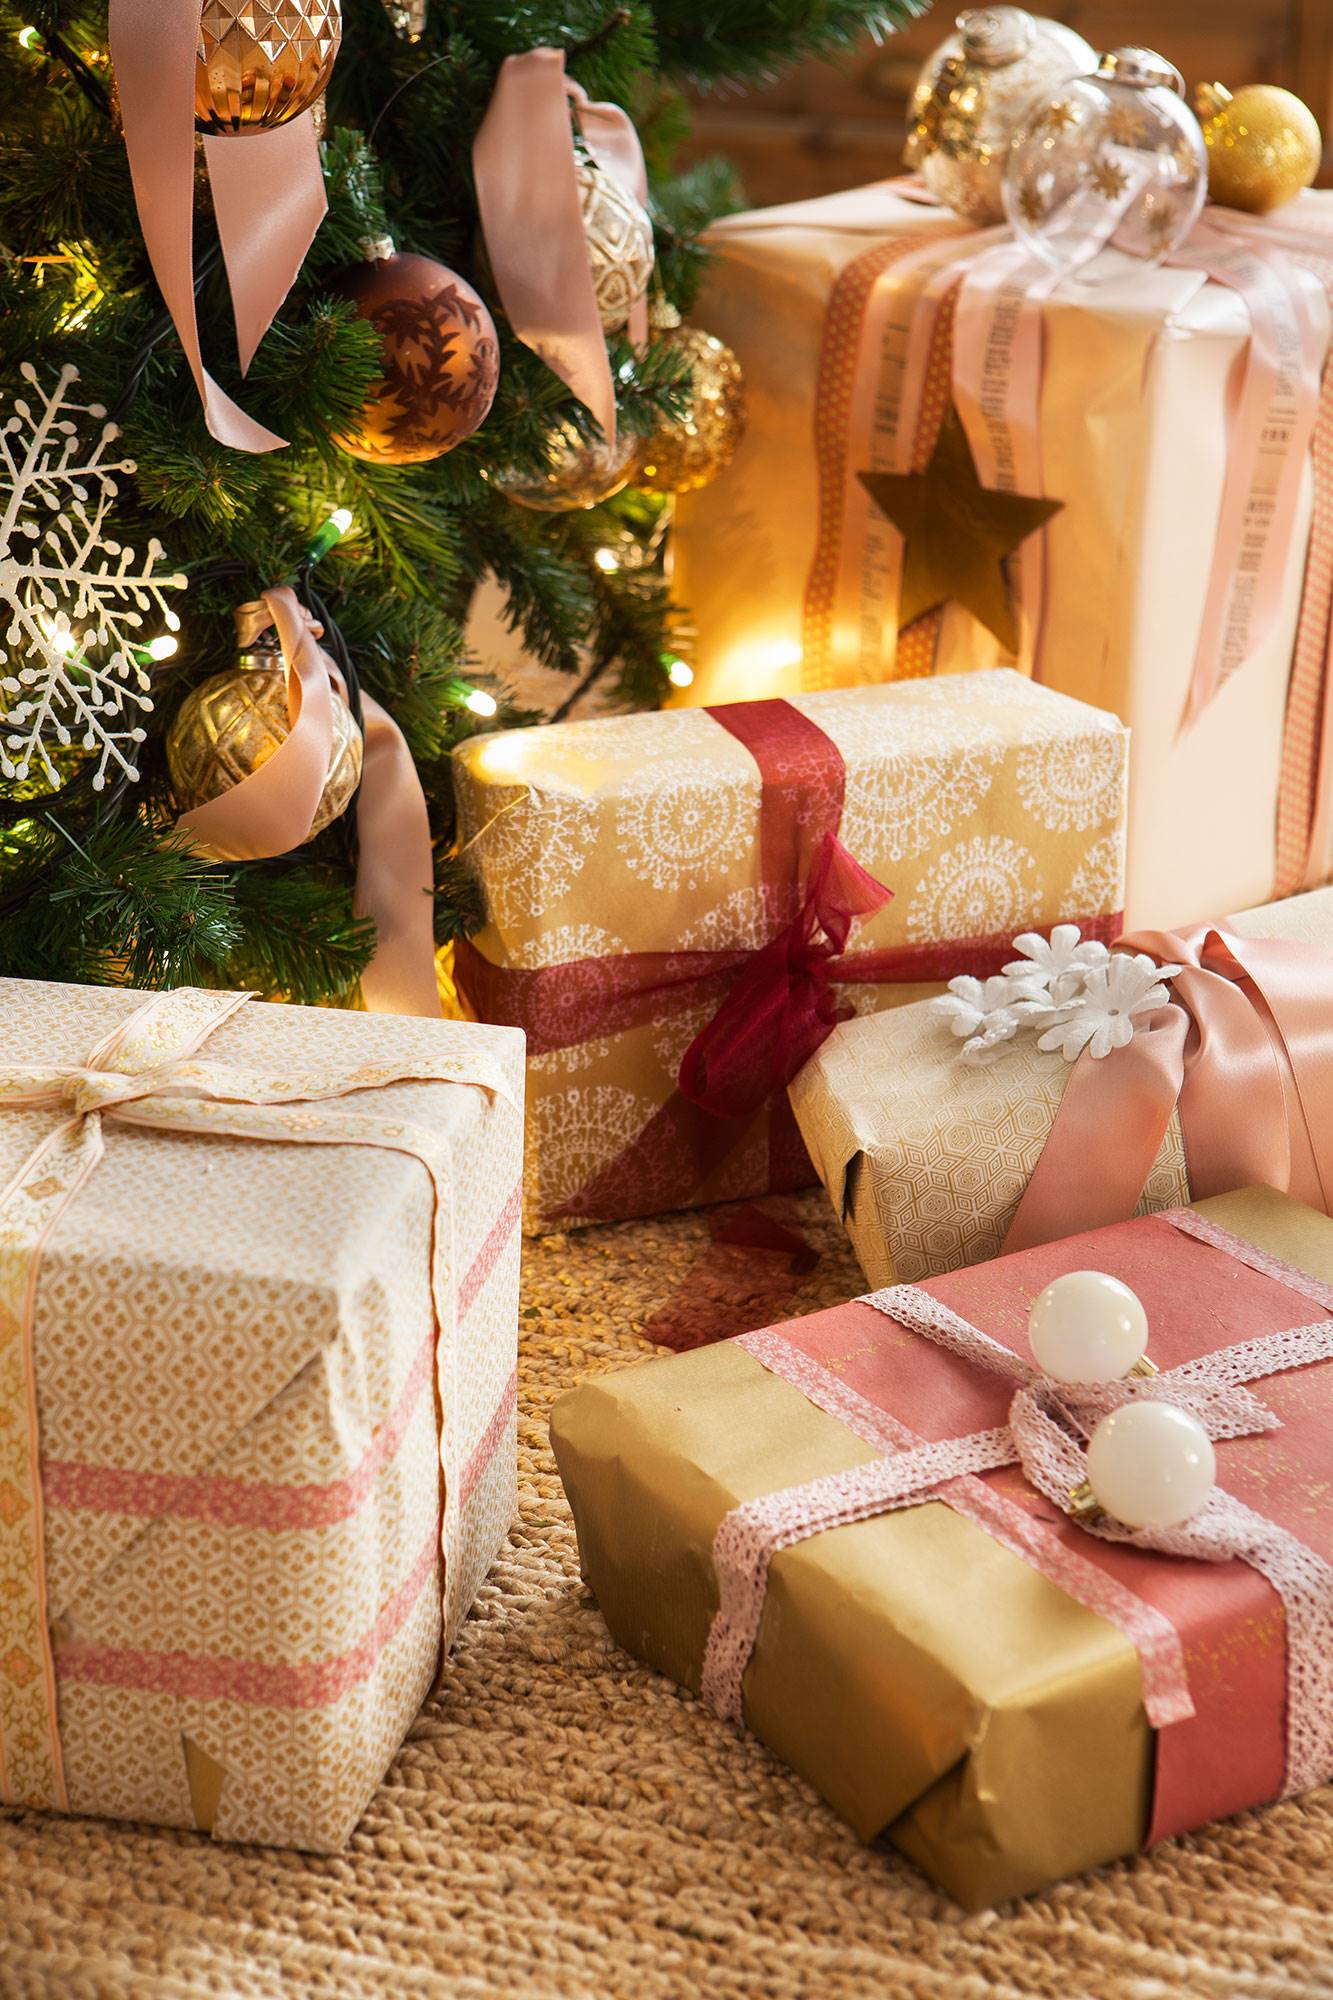 Detalle de regalos de Navidad decorados con lazos y bolas del árbol